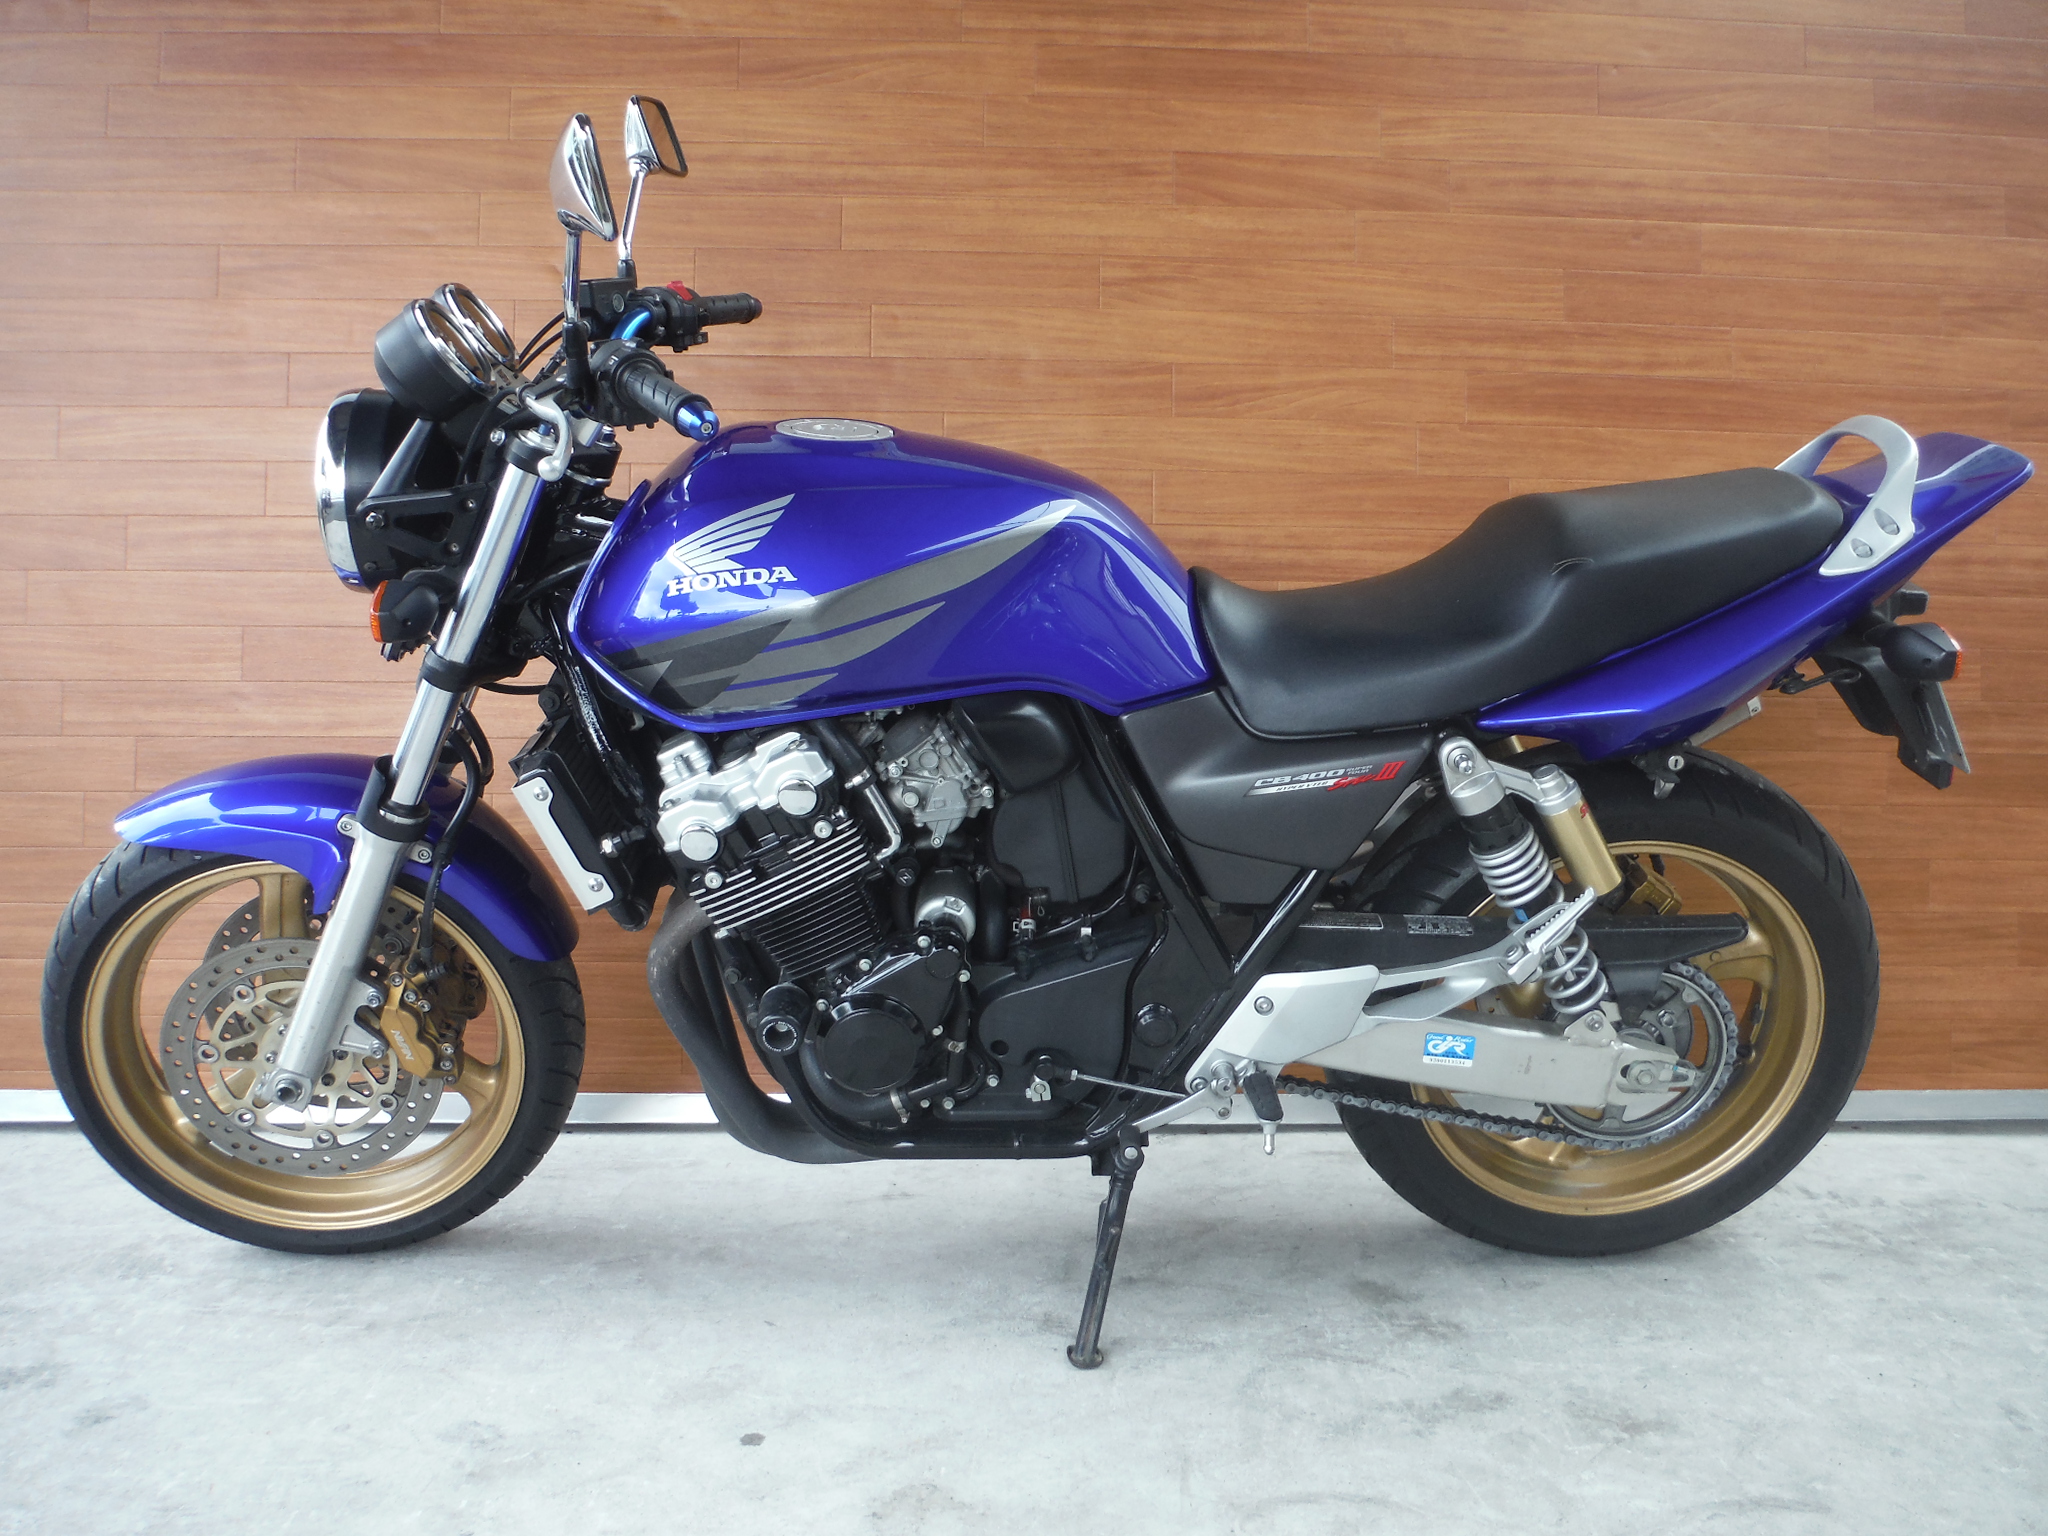 熊本中古車バイク情報 ホンダ Cb400sf 400 05年モデル 青 熊本のバイクショップ アール バイクの新車 中古車販売や買取 レンタル バイクのことならおまかせください